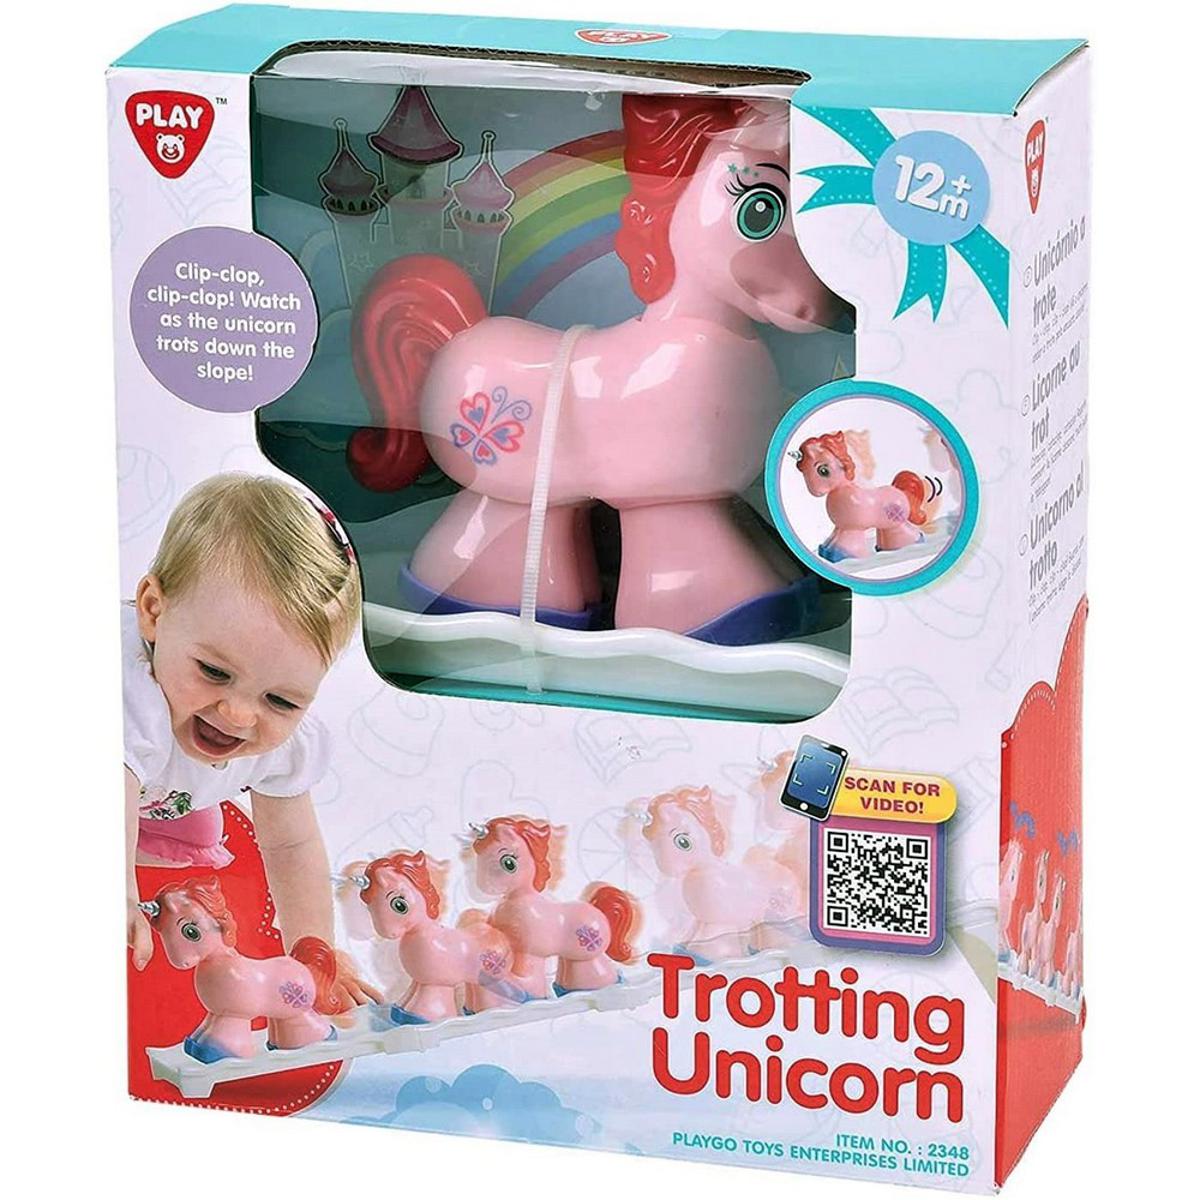 Playgo Trotting Unicorn Educational Activity Toy